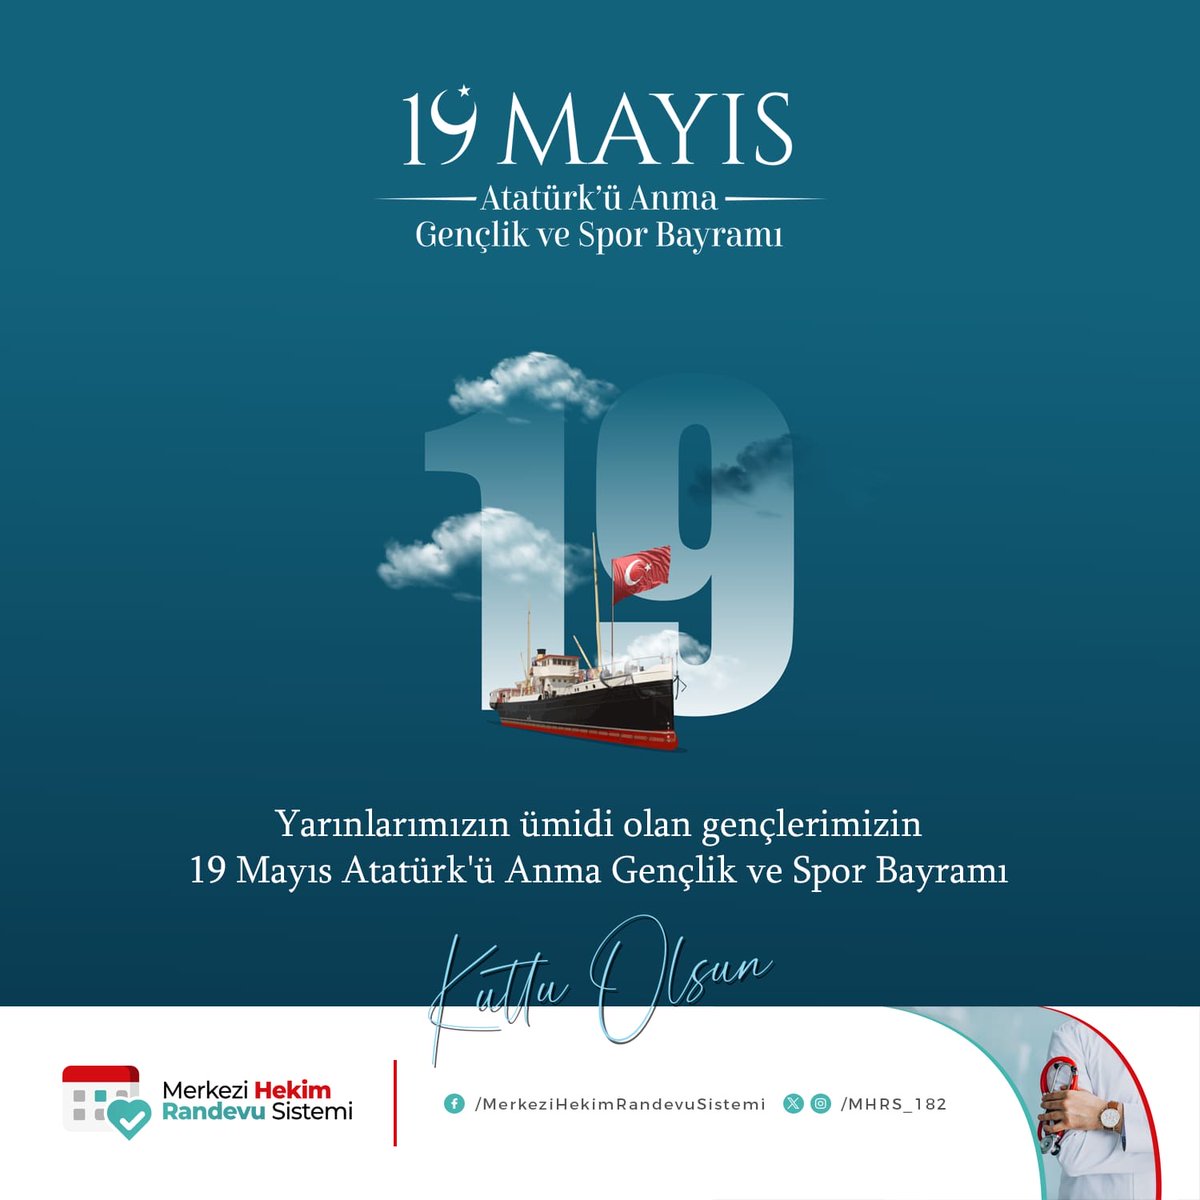 Yarınlarımızın ümidi olan gençlerimizin 19 Mayıs Atatürk'ü Anma Gençlik ve Spor Bayramı kutlu olsun. #19Mayıs #GençlikVeSporBayramı